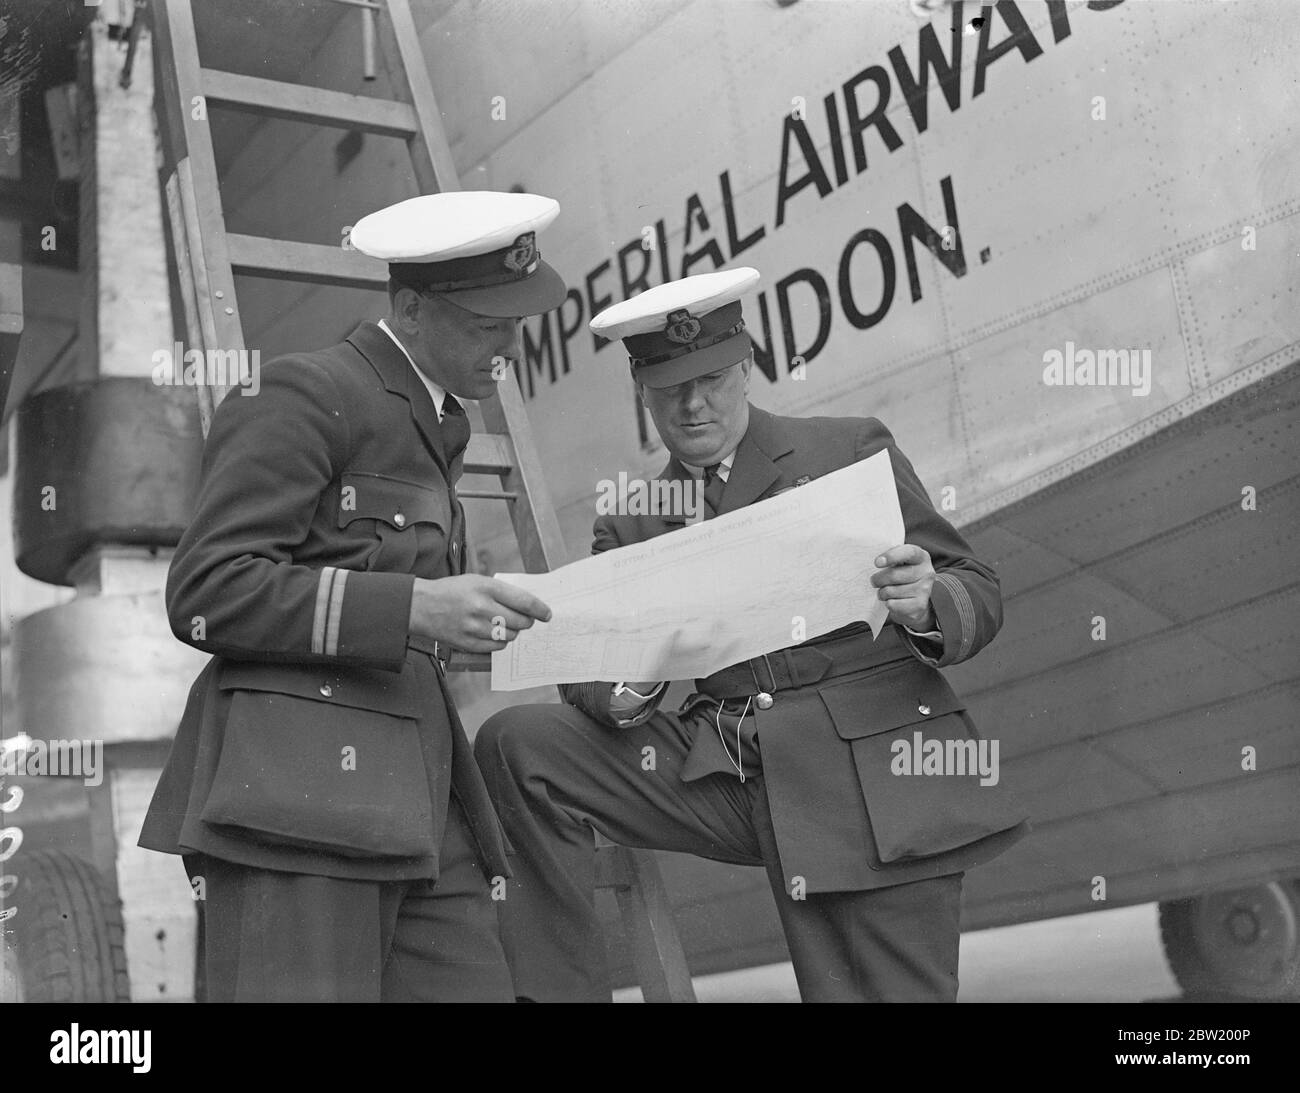 Kapitän A. S. Wilcockson (rechts) und First Officer G. H. Bowes untersuchen die Atlantikroute bei Caledonia in Hythe, Southampton, um die erste experimentelle kommerzielle transatlantische Überfahrt mit dem fliegenden Boot Caledonia in der nächsten Woche (Juni 24) zu machen. 18 Juni 1937 Stockfoto